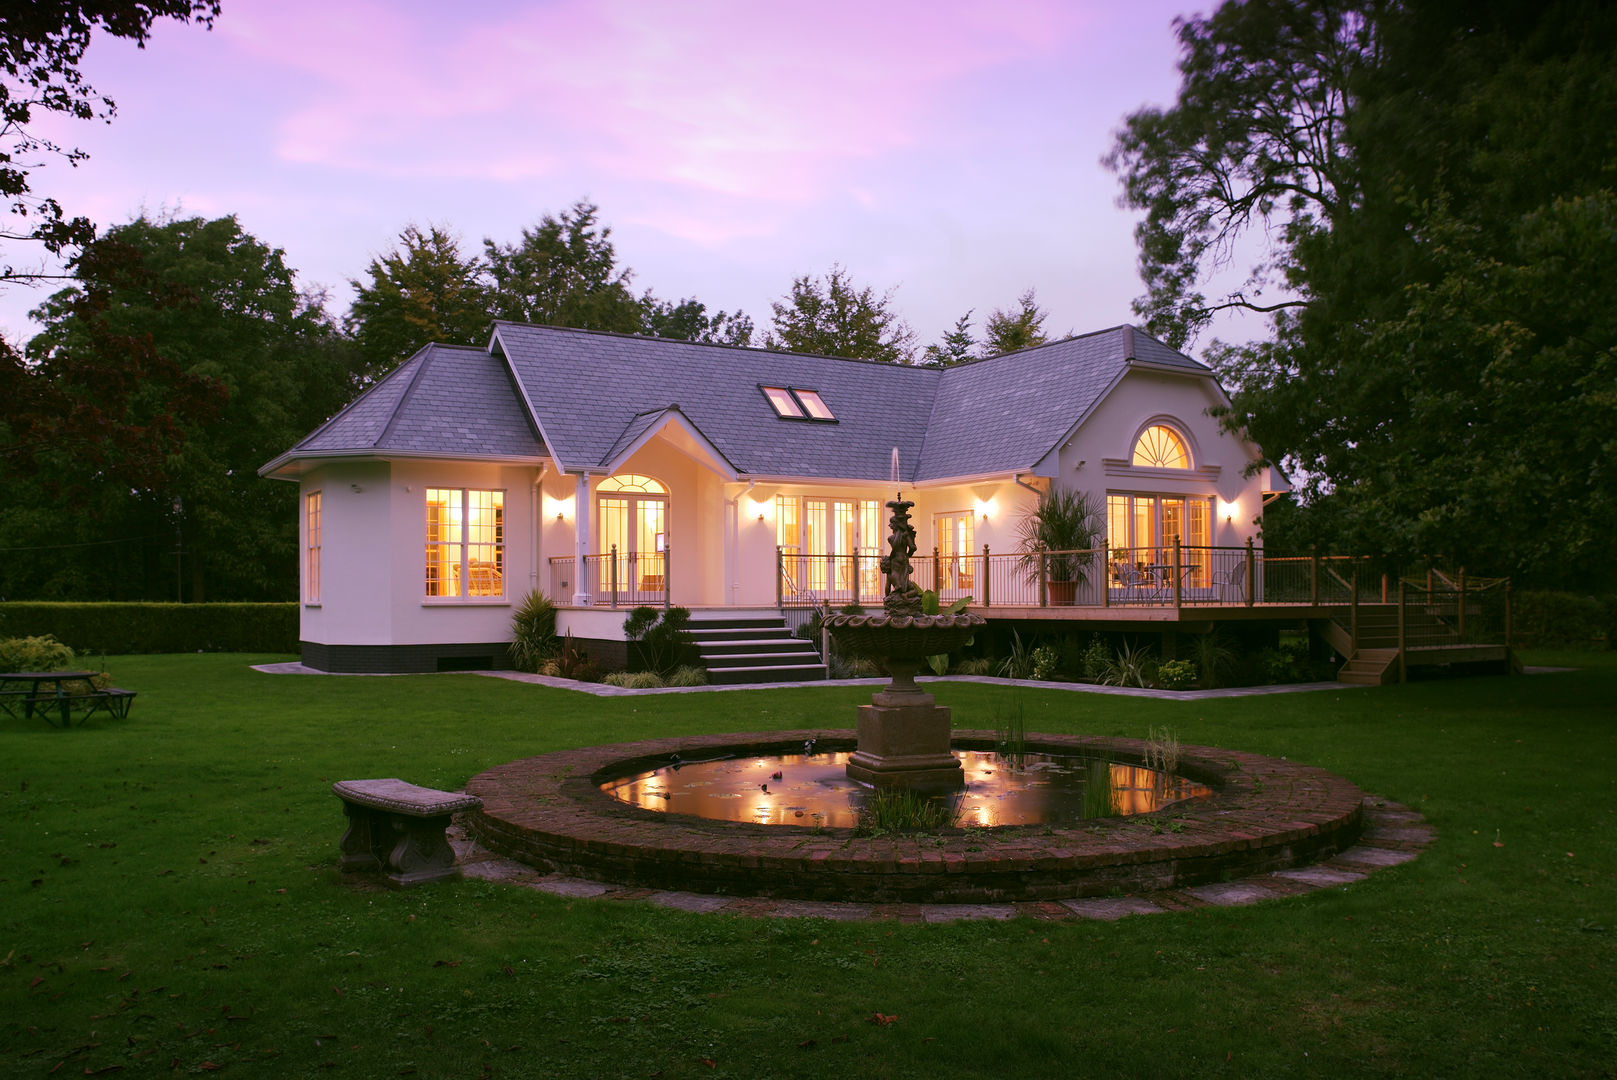 Neo Classical Design New build family home Marvin Windows and Doors UK Puertas y ventanas de estilo clásico